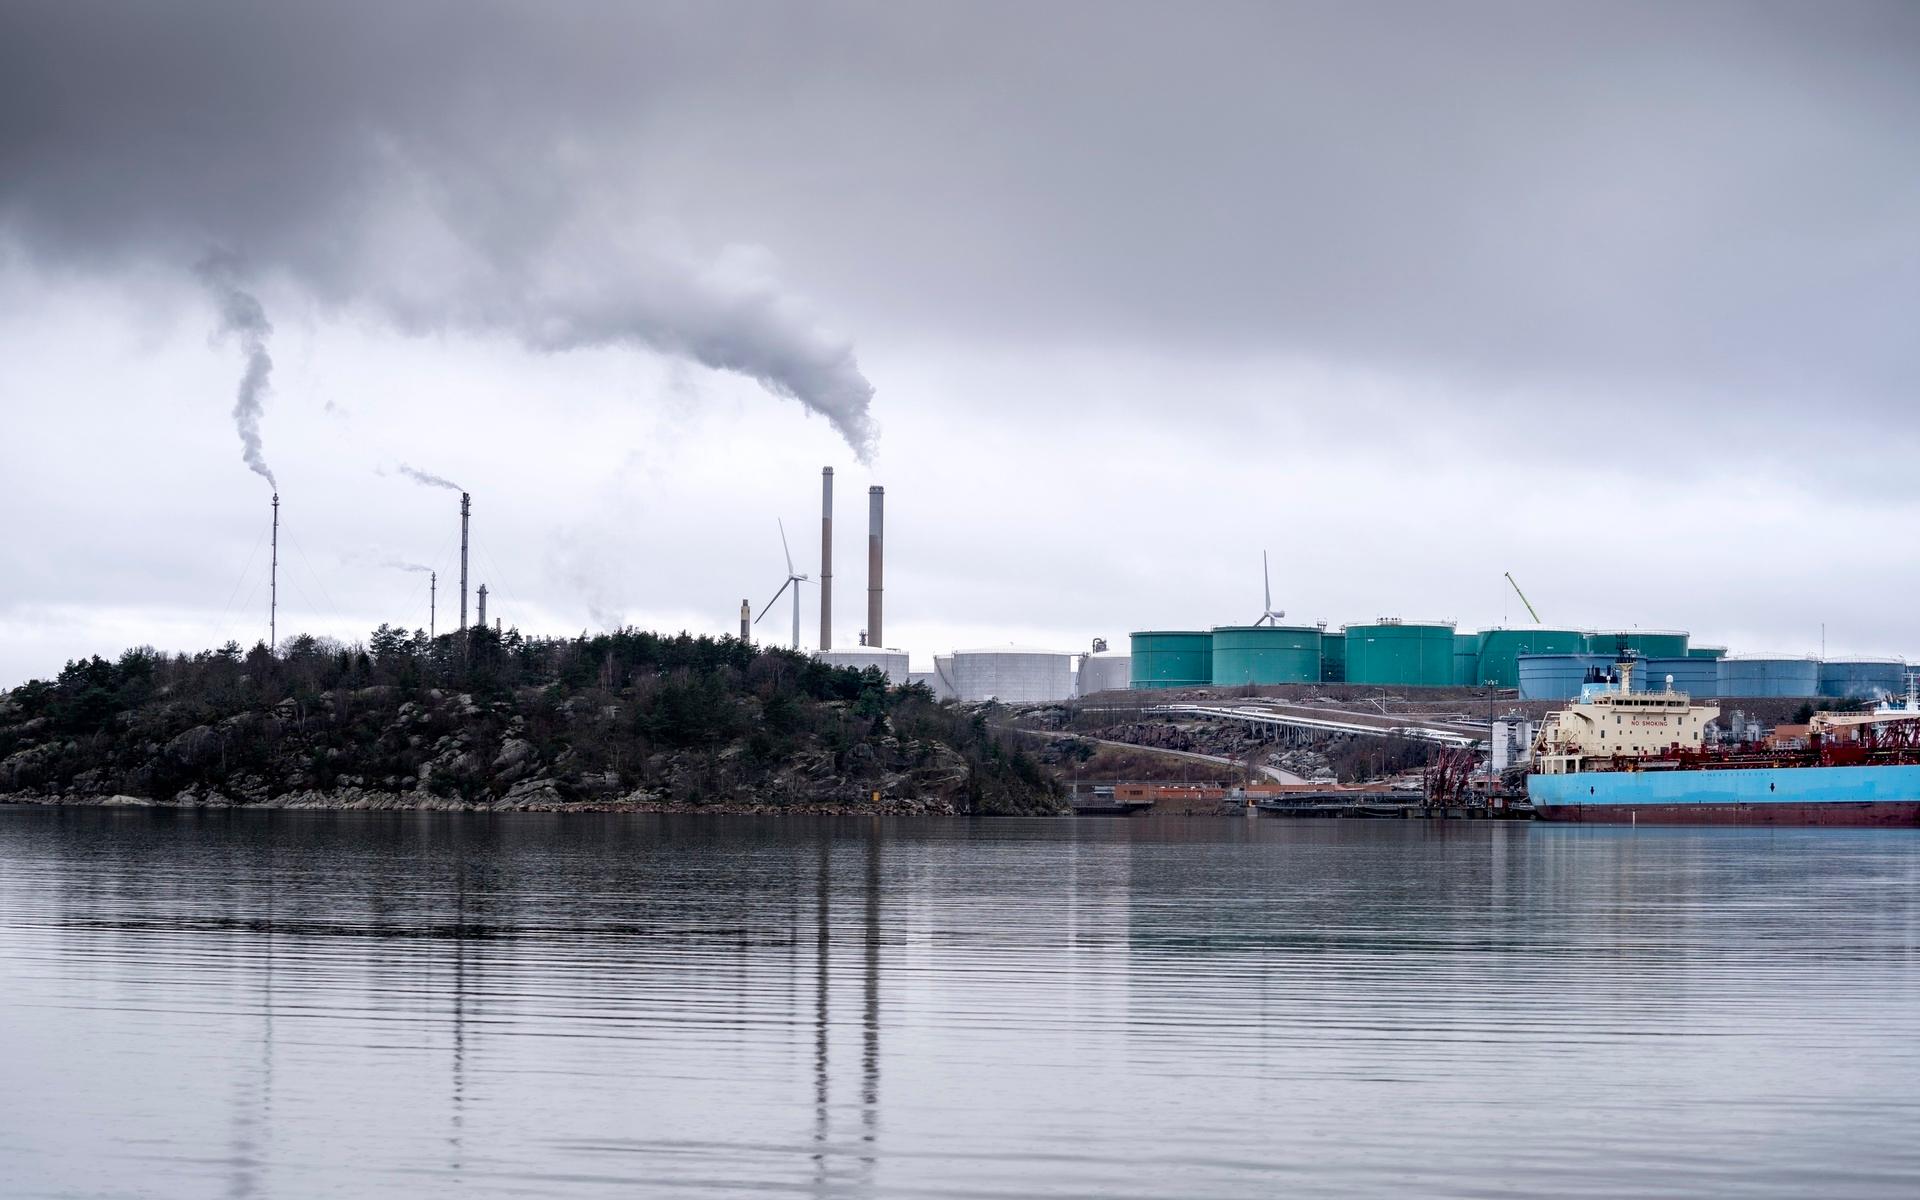 Oljebolaget Preem, med raffinaderier i Lysekil och Göteborg, släpper ut tredje mest i Sverige. 